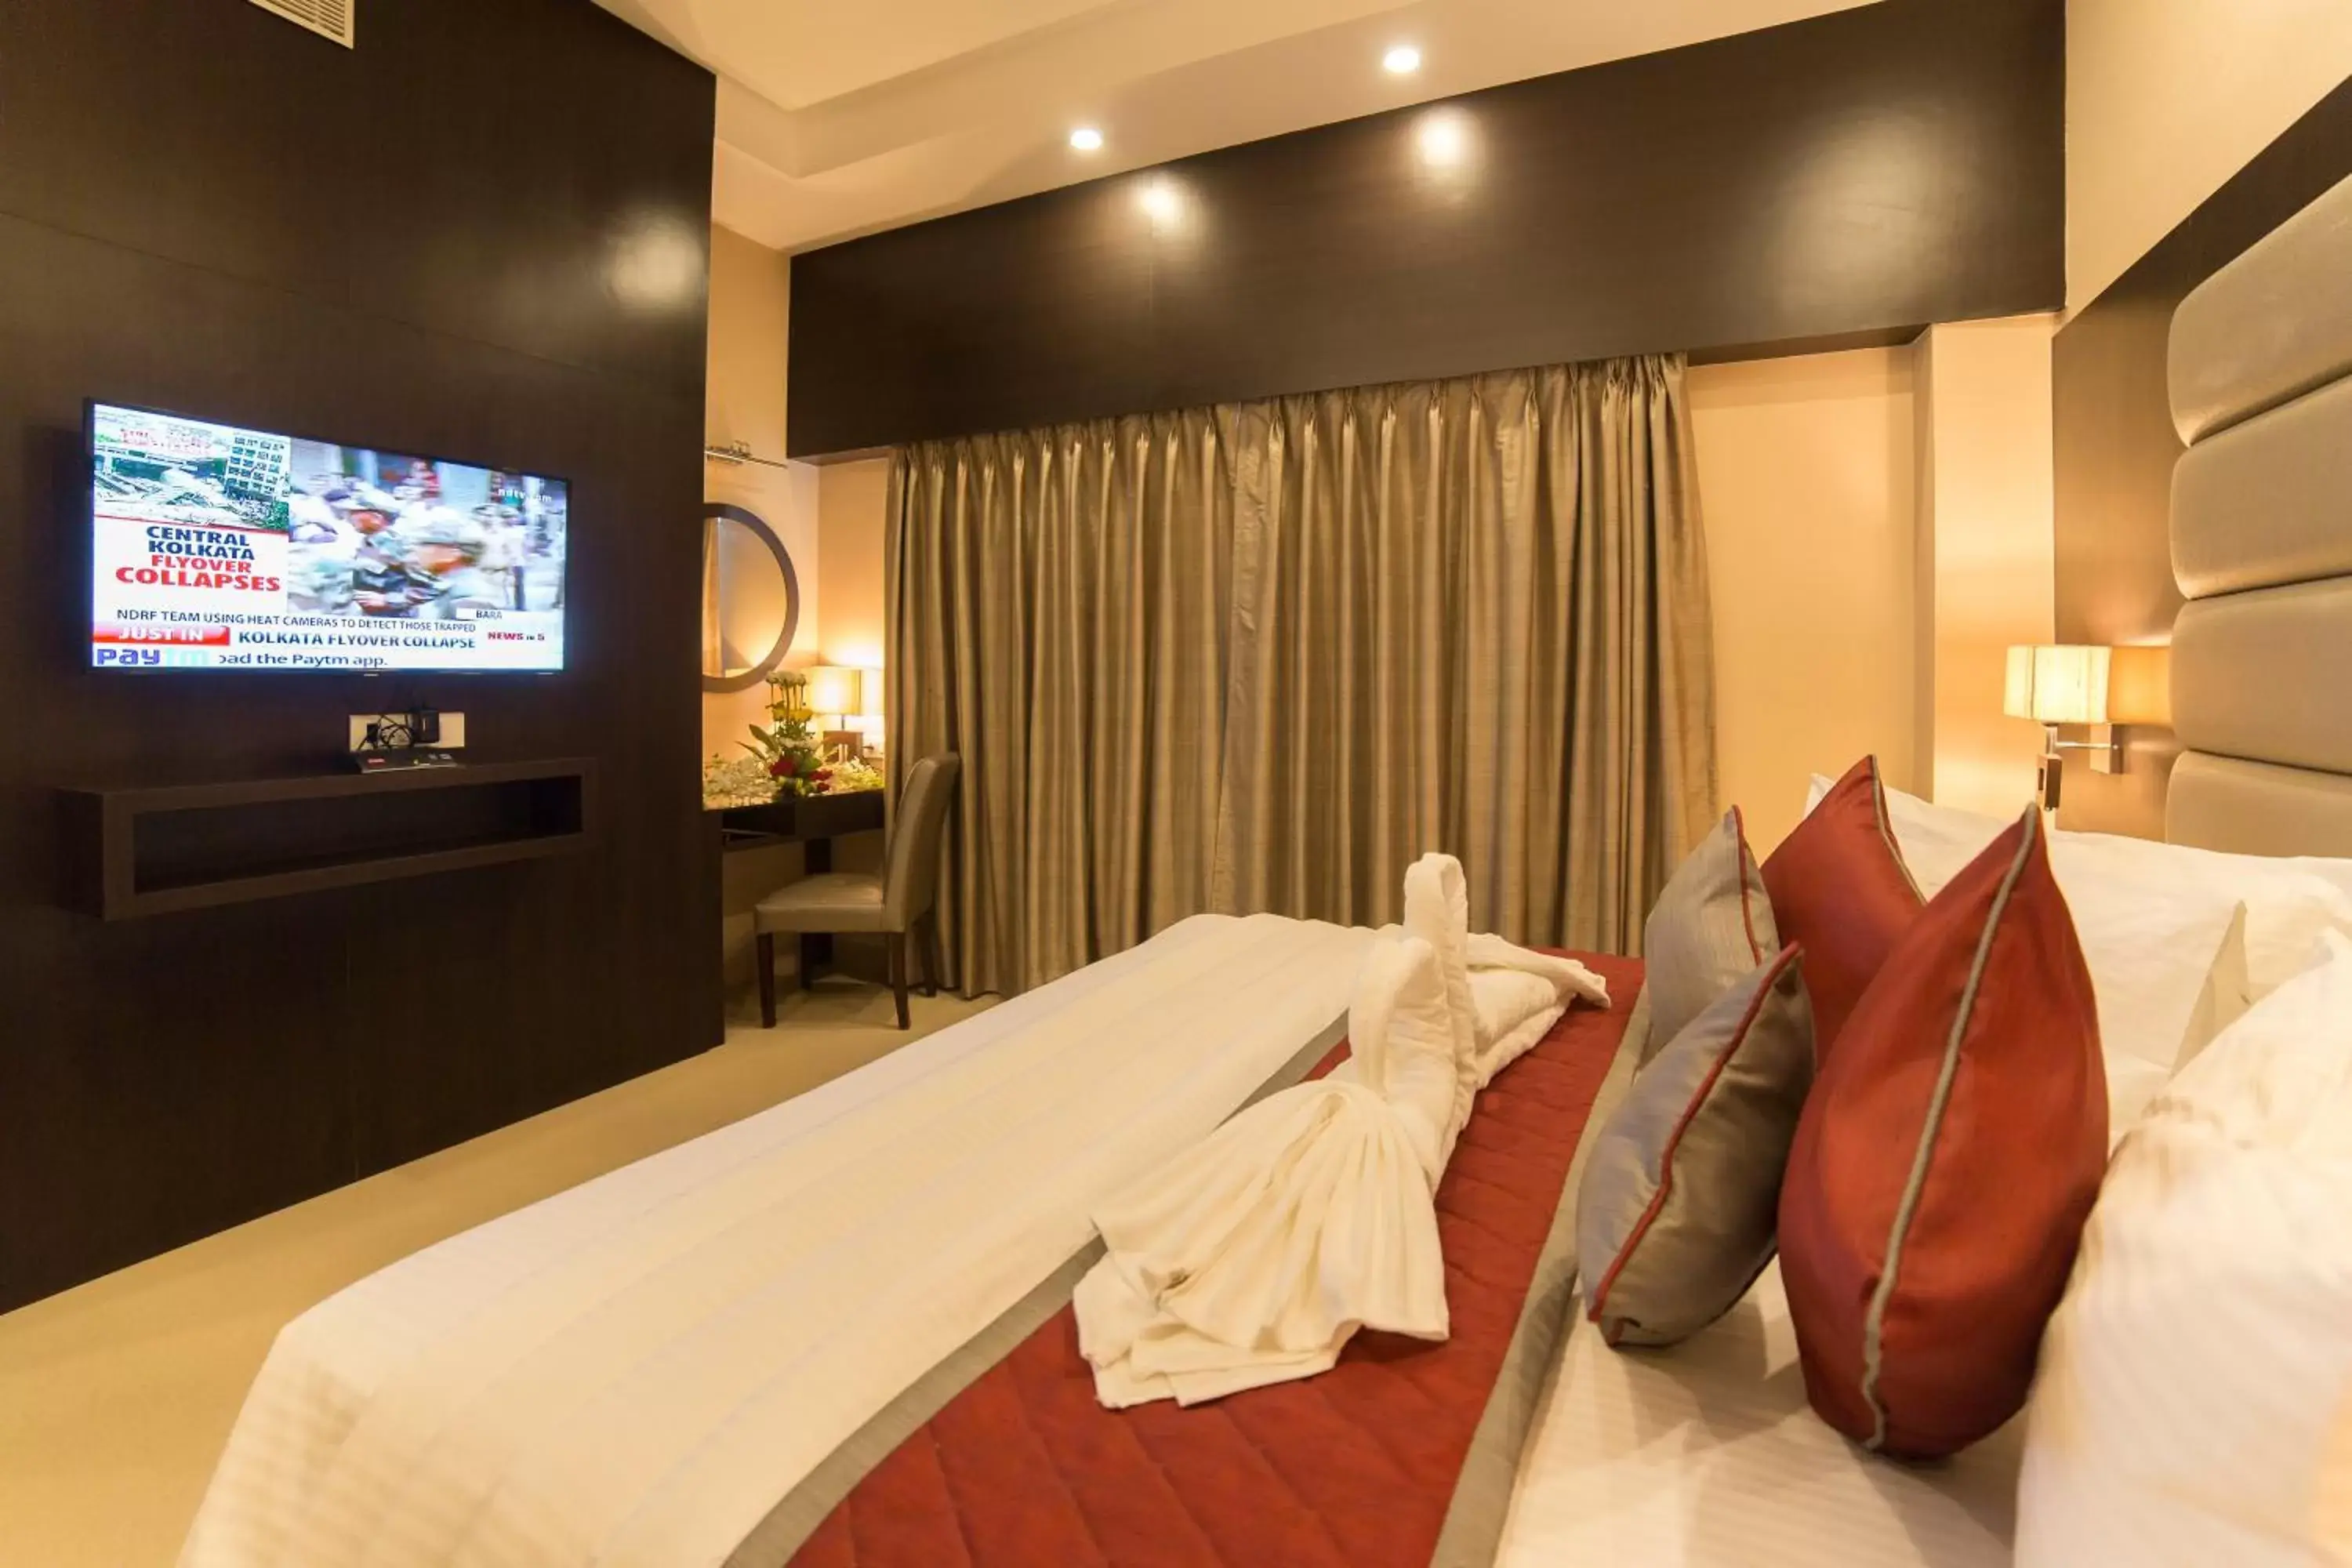 Bedroom, Room Photo in Golden Tulip Saltlake Kolkata